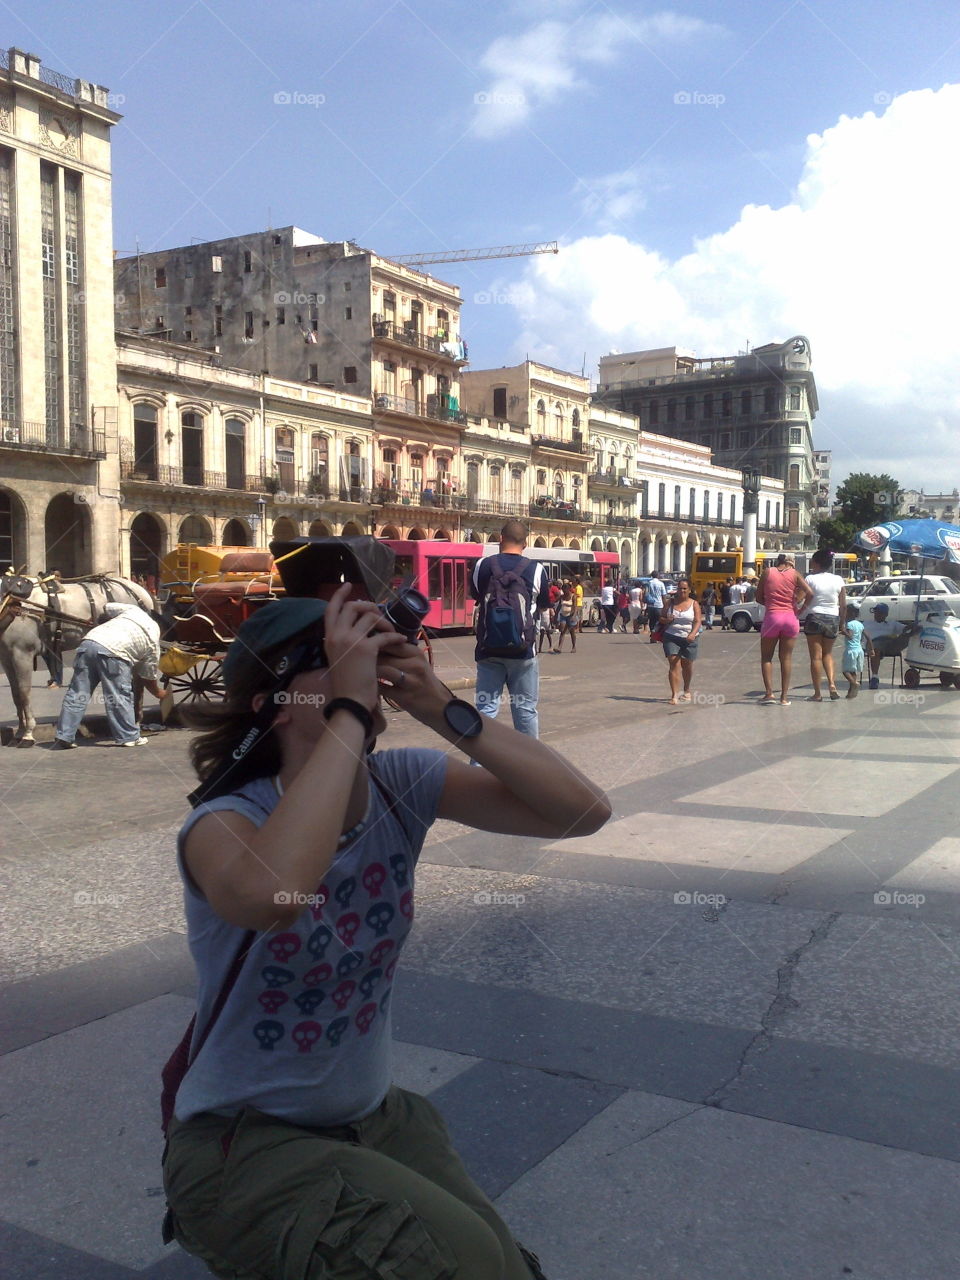 Taking photos in Havana, Cuba